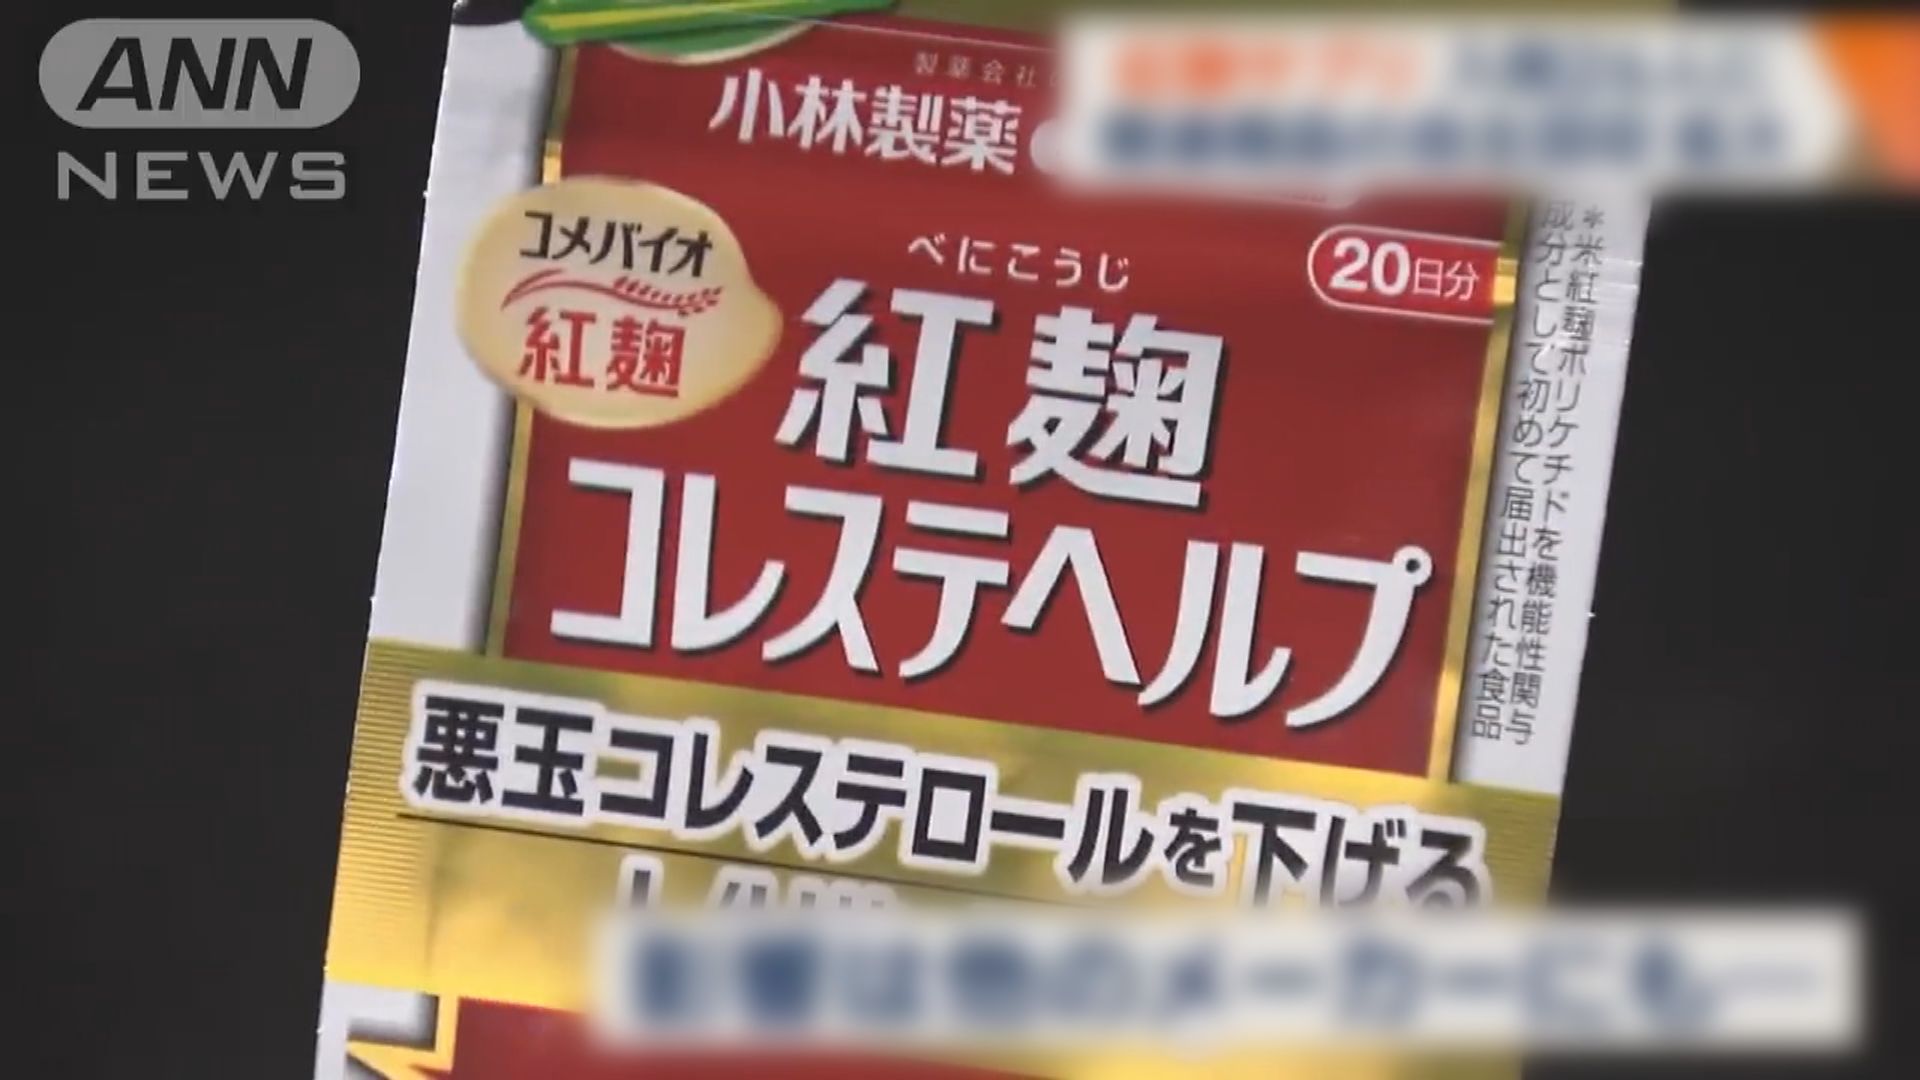 日本因應小林製藥紅麴保健品風波 緊急檢查全部功能性食品